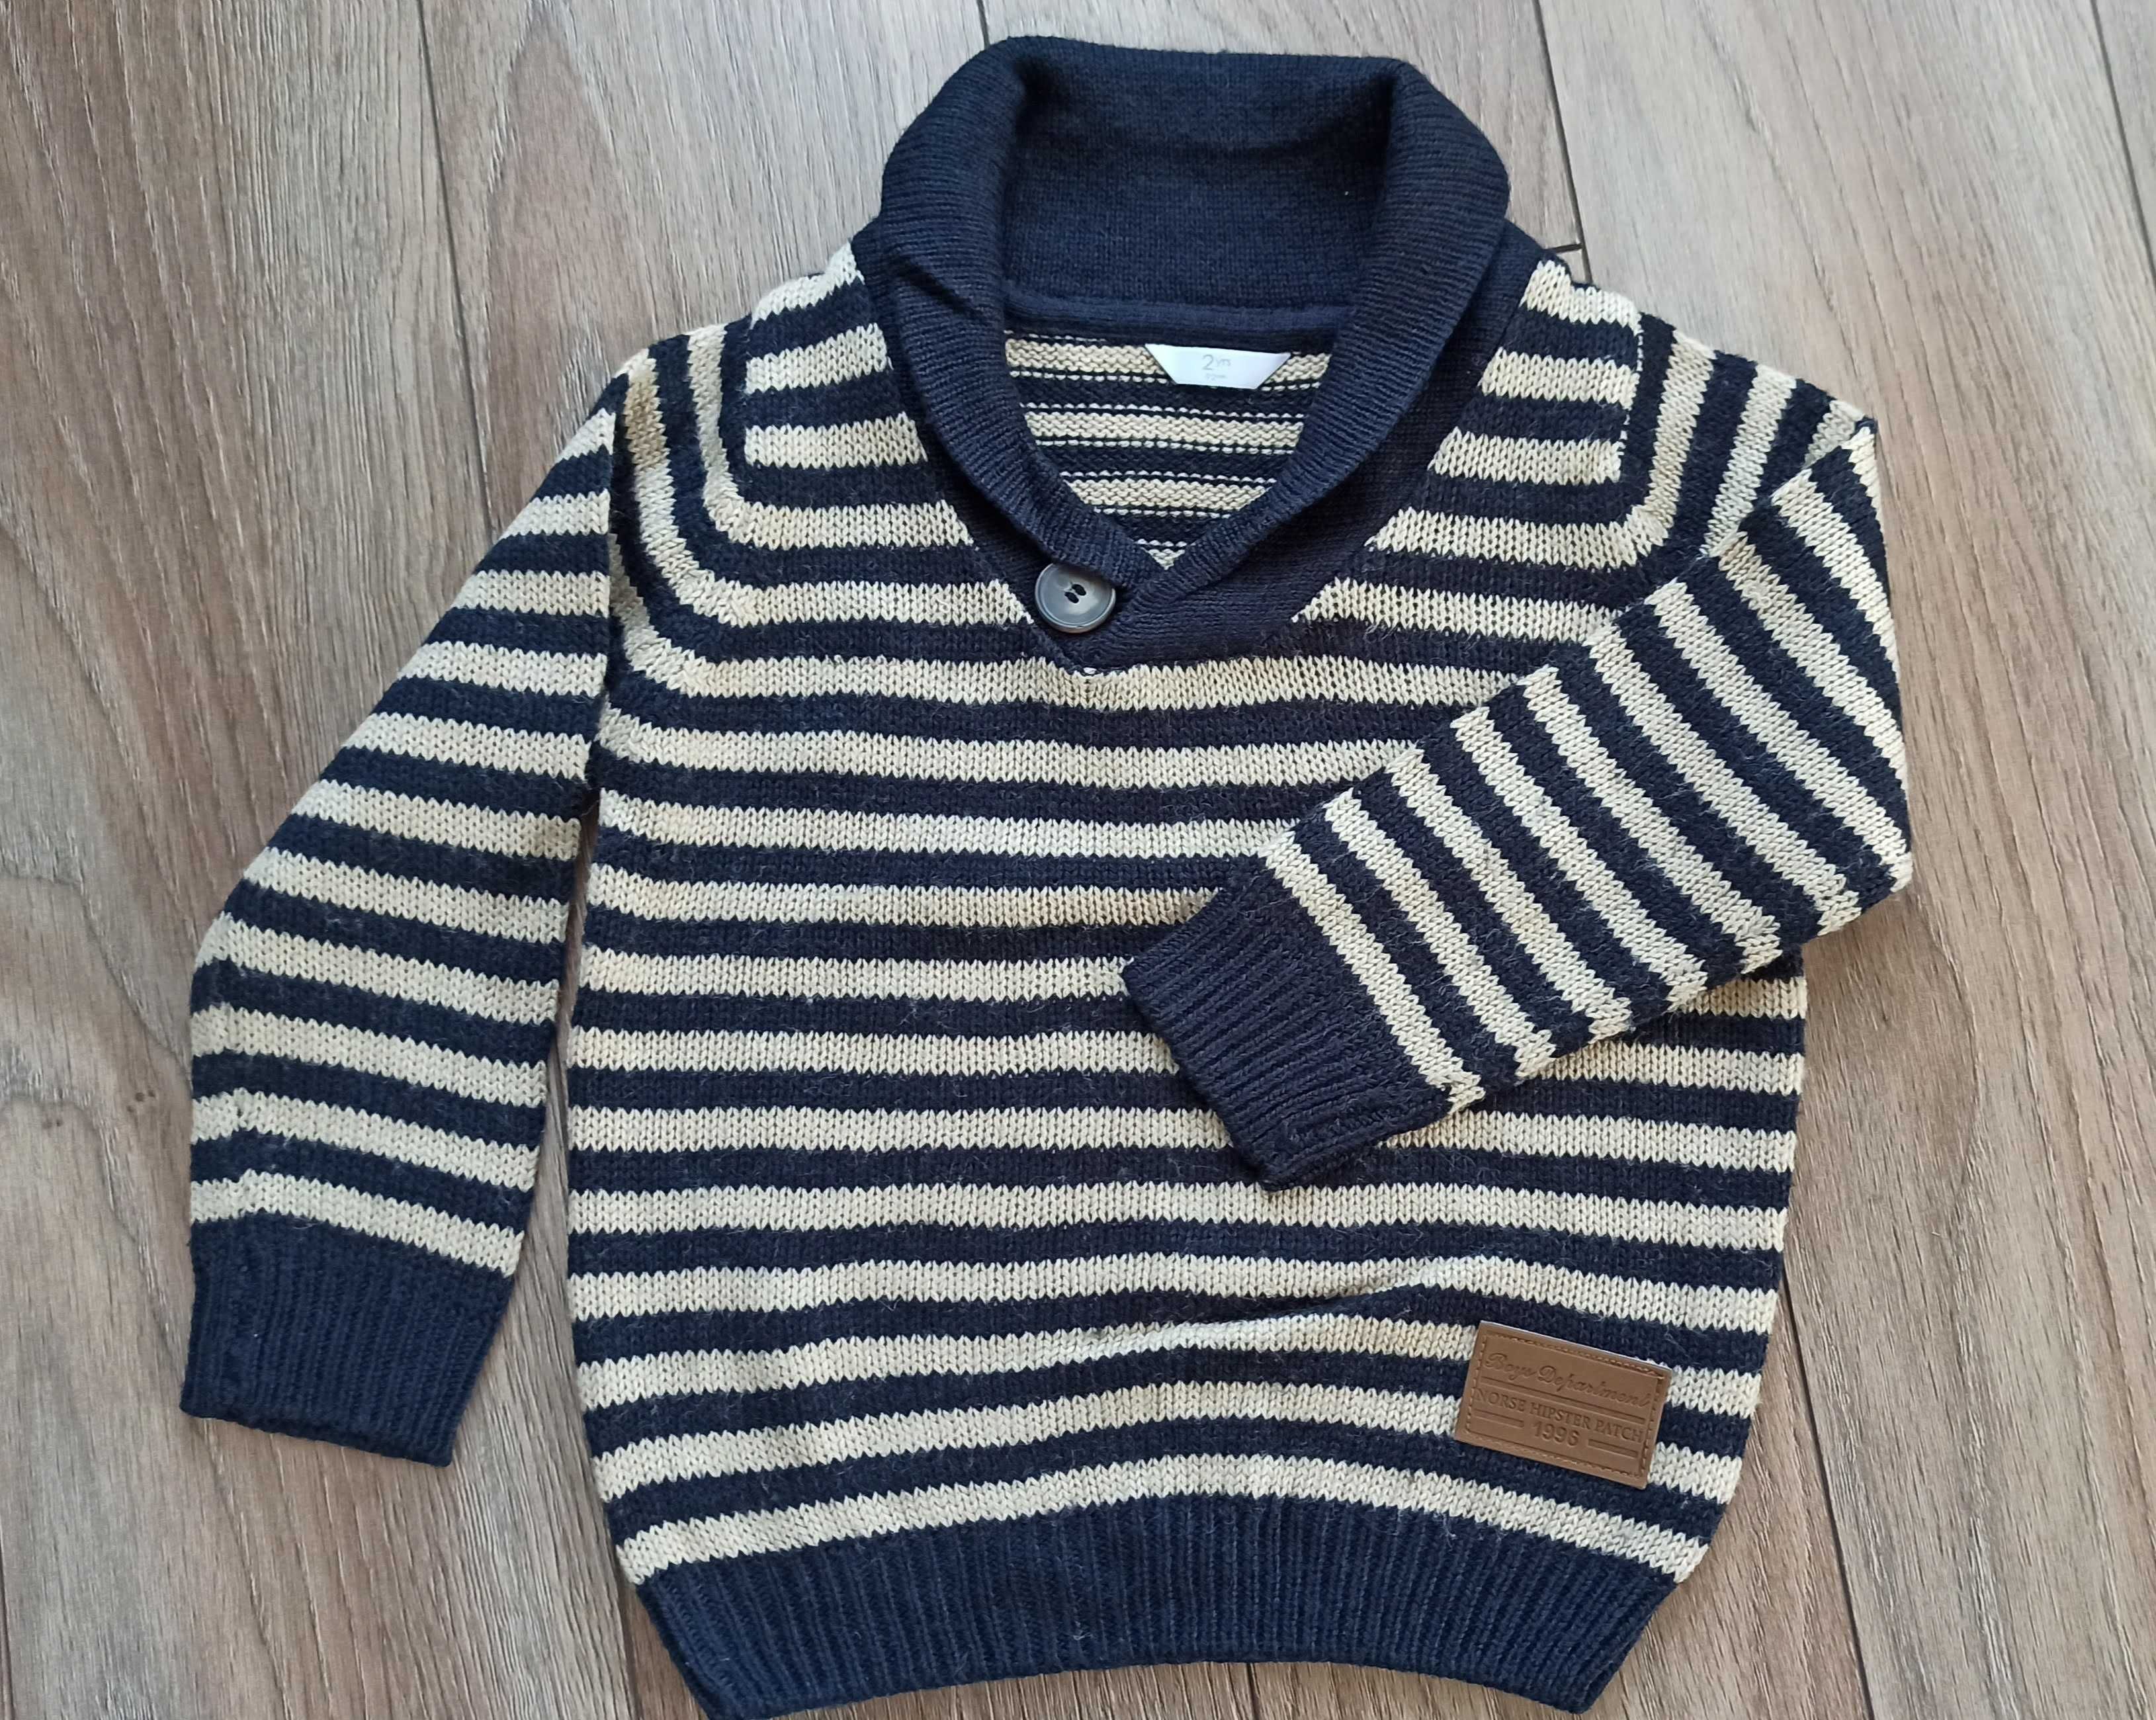 Sweter chłopięcy, r. 86-92 (18-24 miesiące)